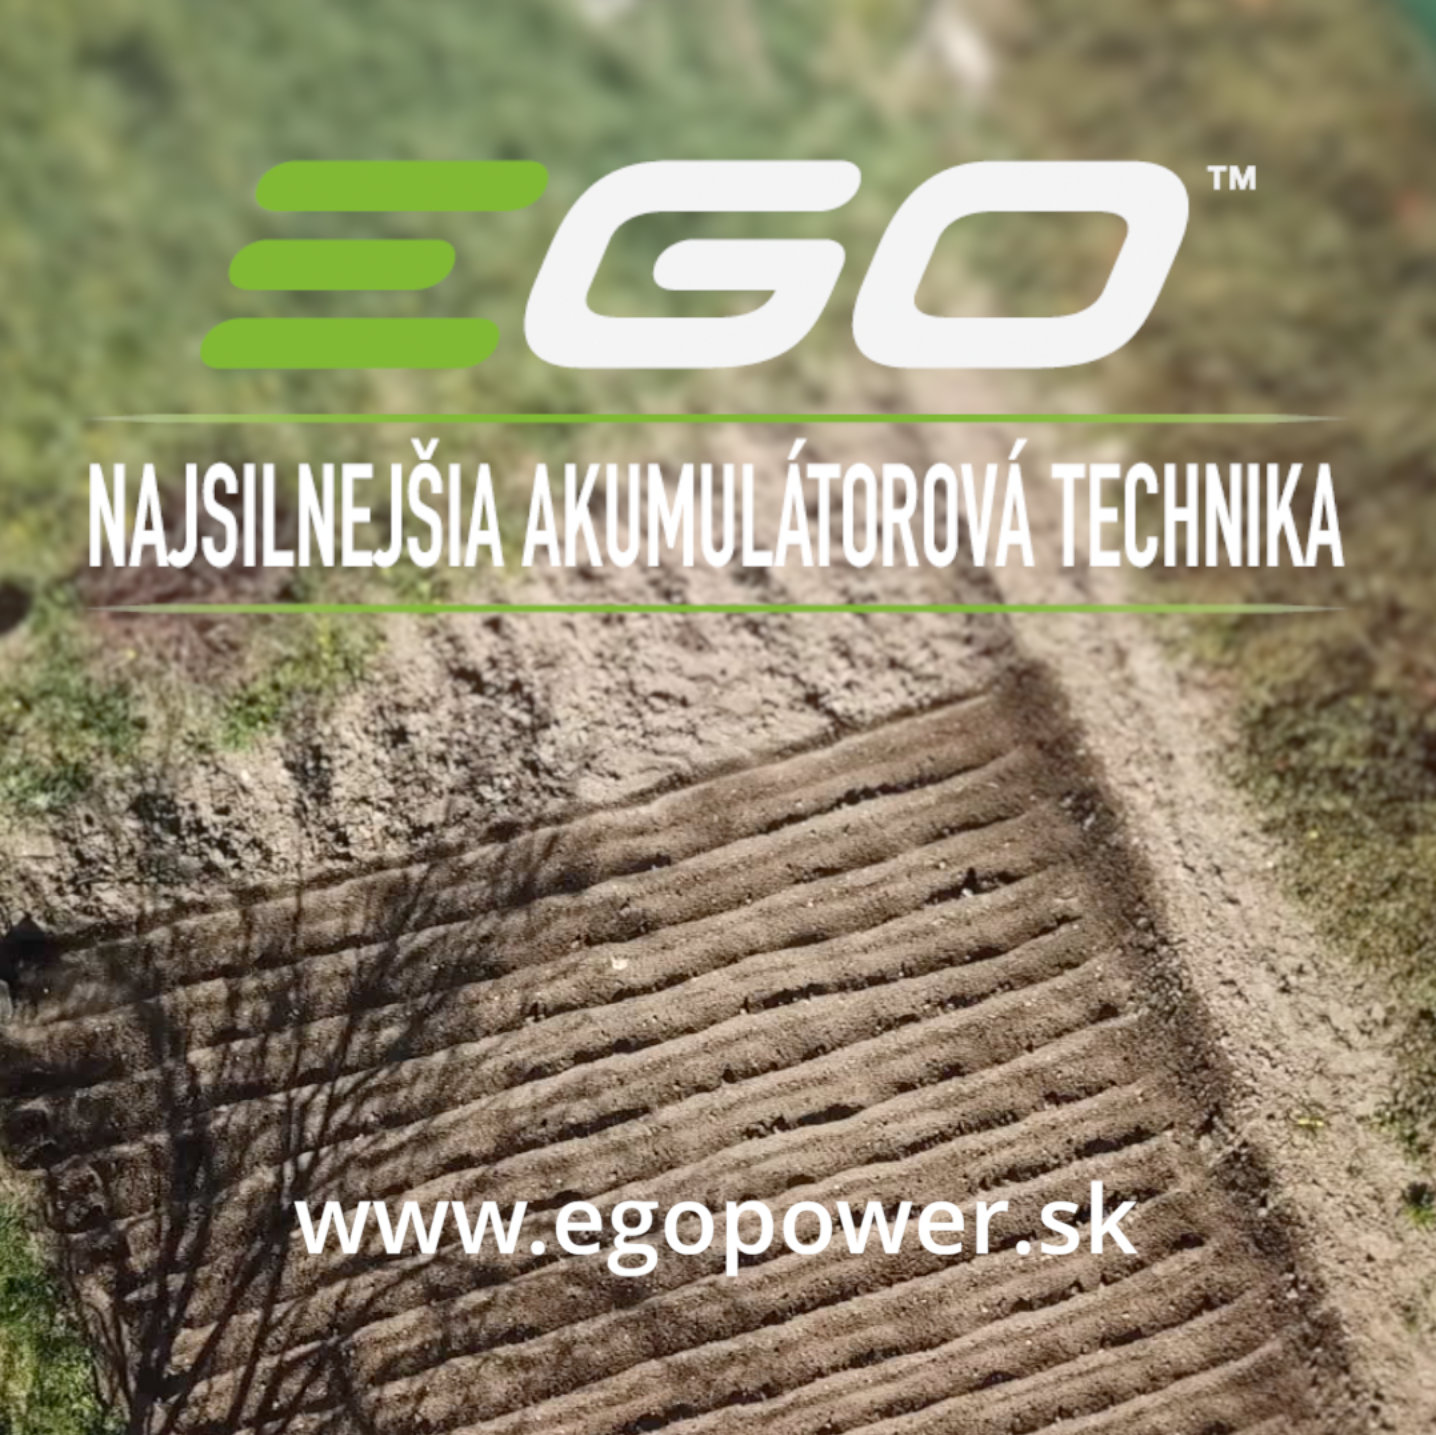 EGO Power+ (youtube ads)